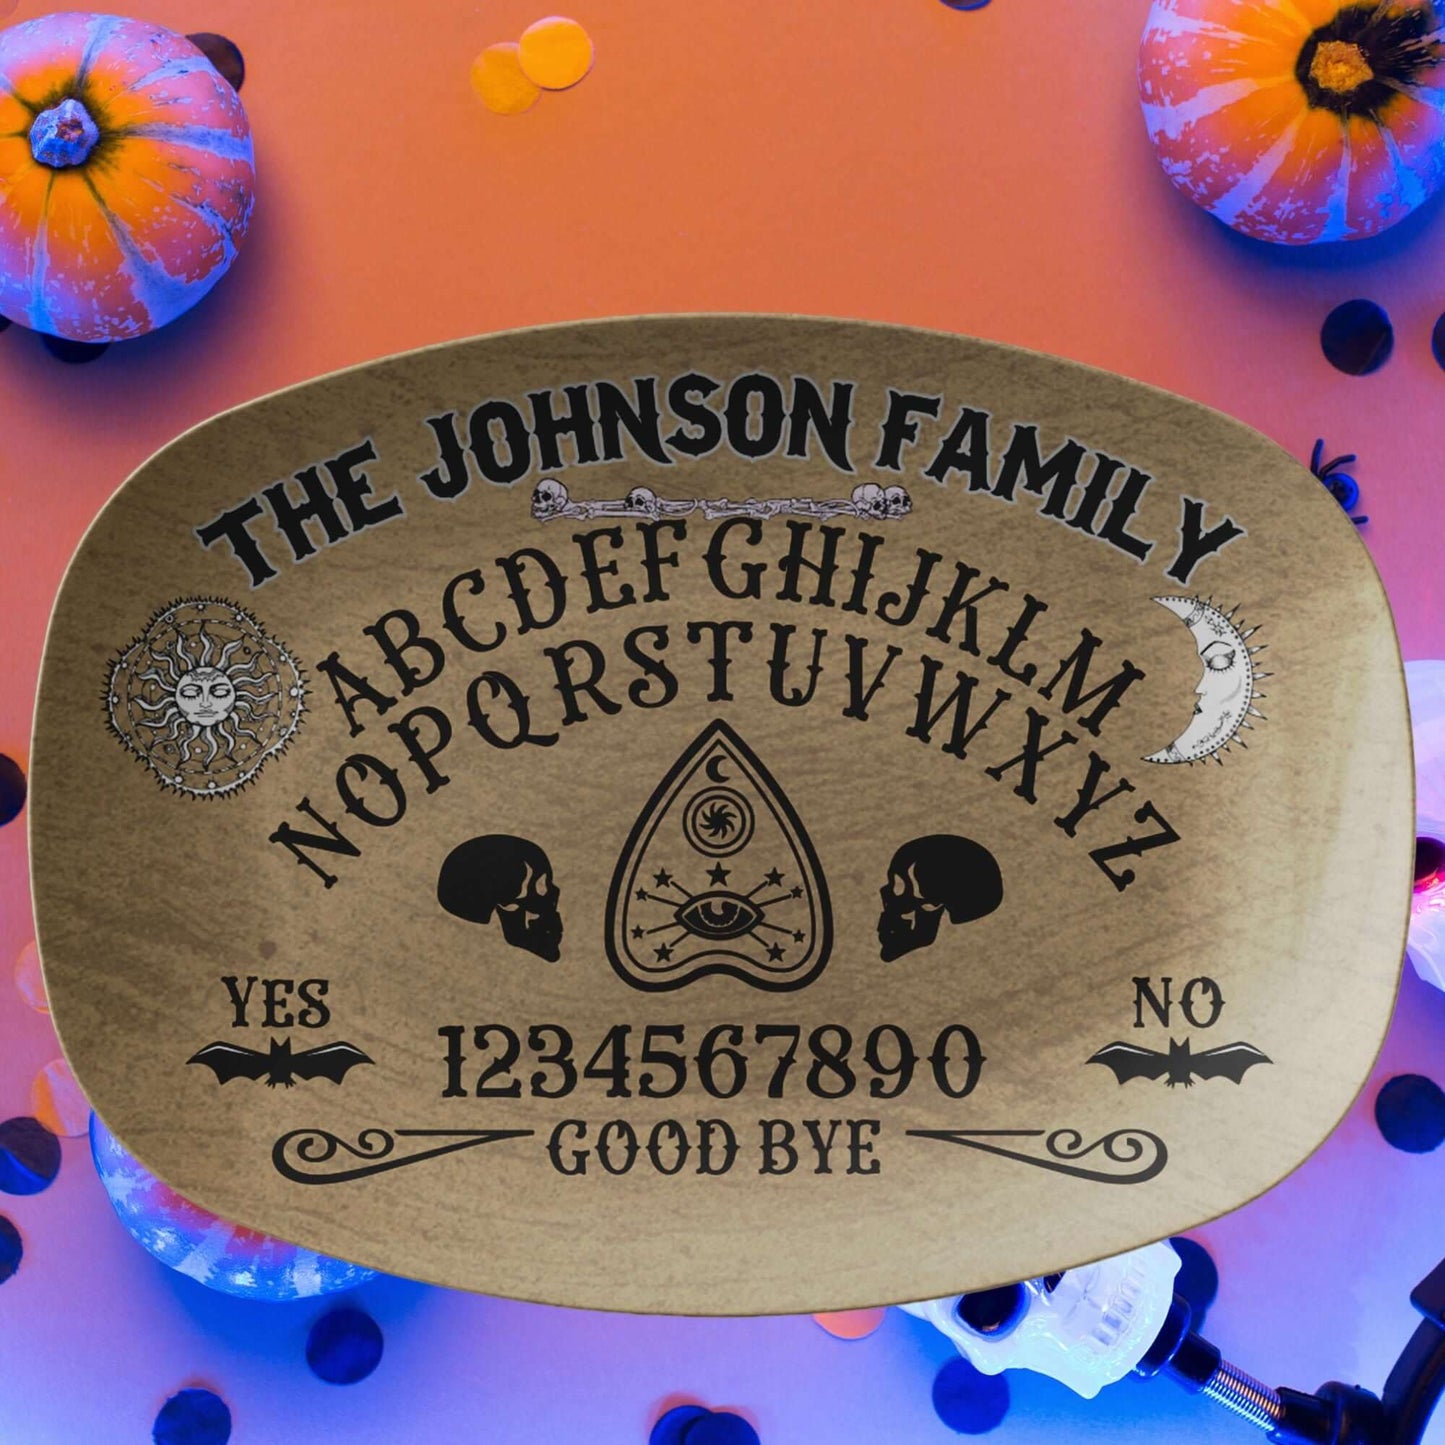 Ouija Board Personalized Platter, Custom Serving Tray